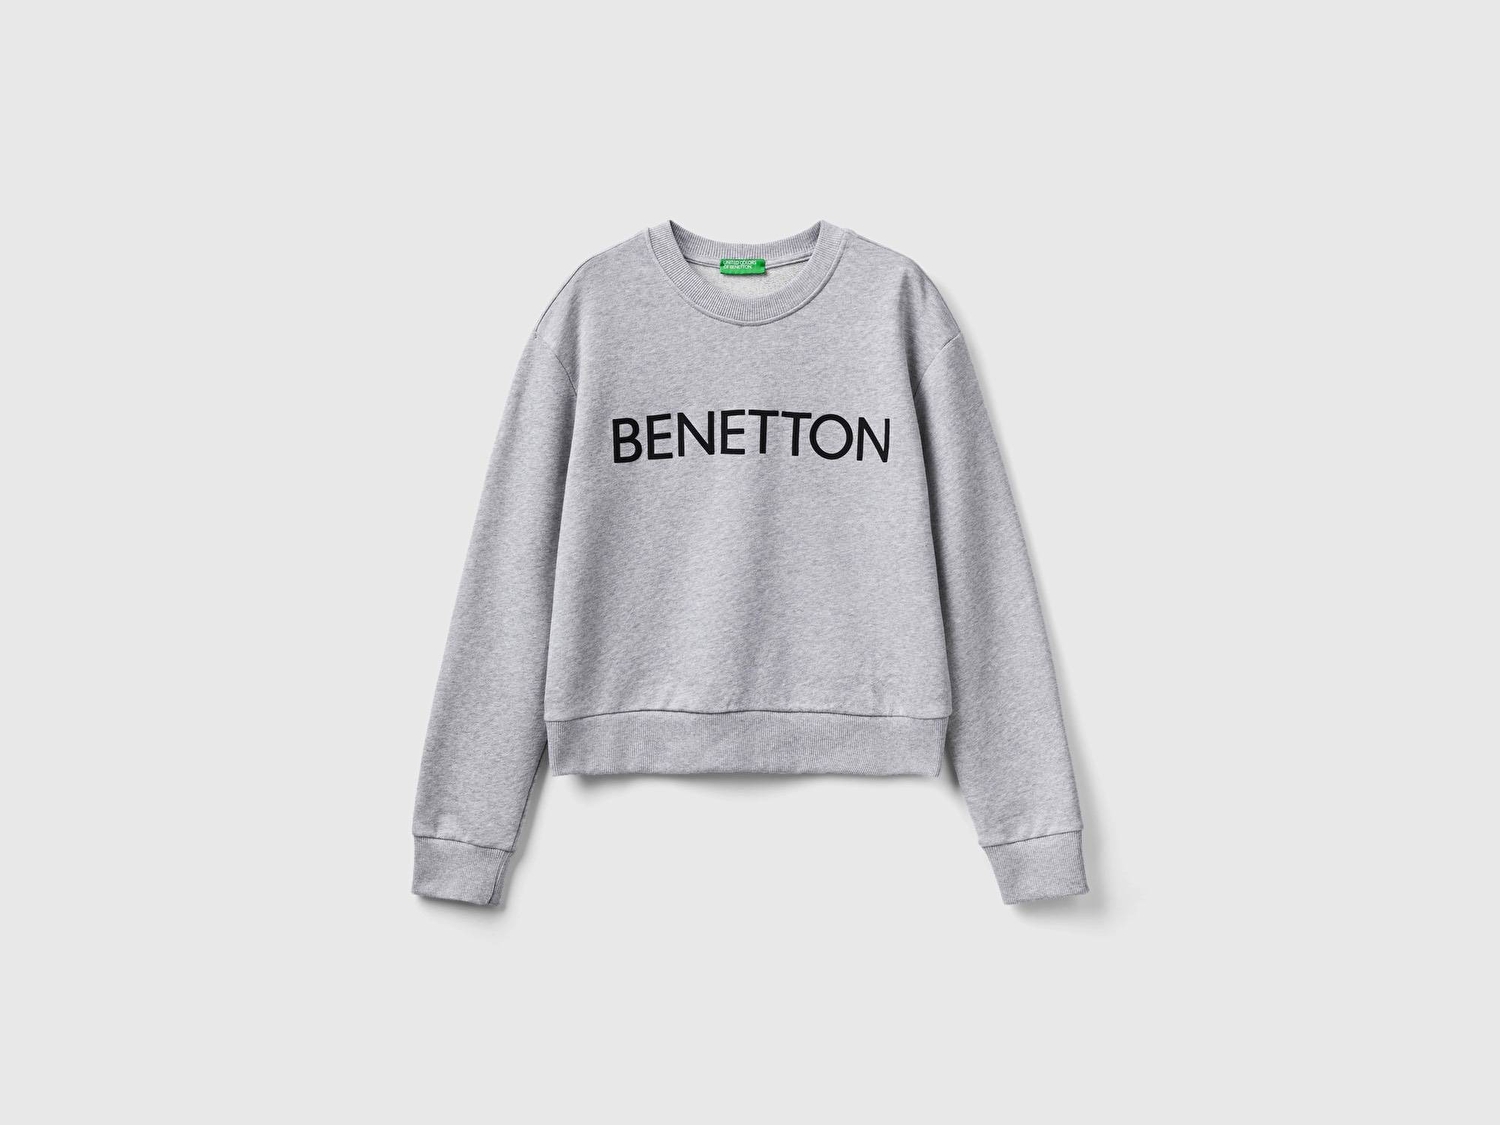 Benetton Kadın Gri Melanj %100 Koton Rahat Kalıp Benetton Yazılı Sweatshirt